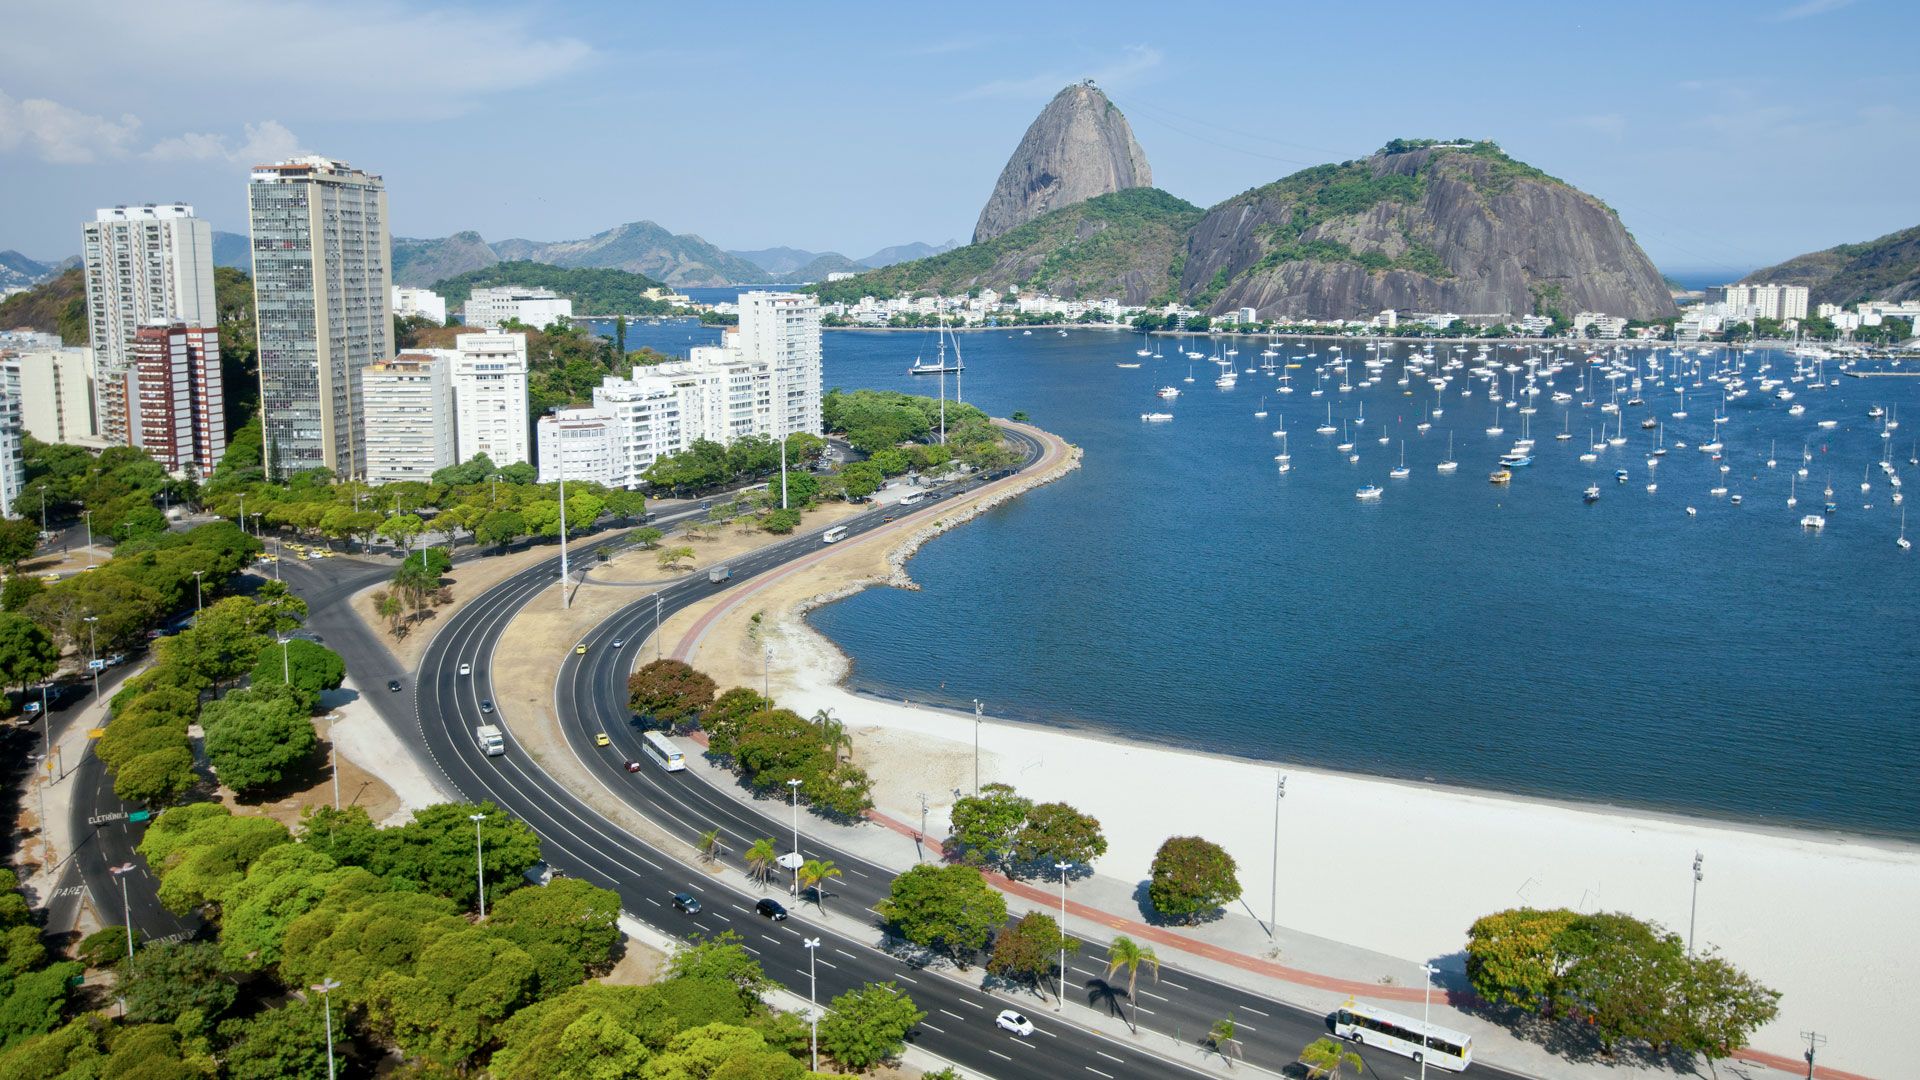 Wintershall Dea Brazil Rio de Janeiro Headquarters